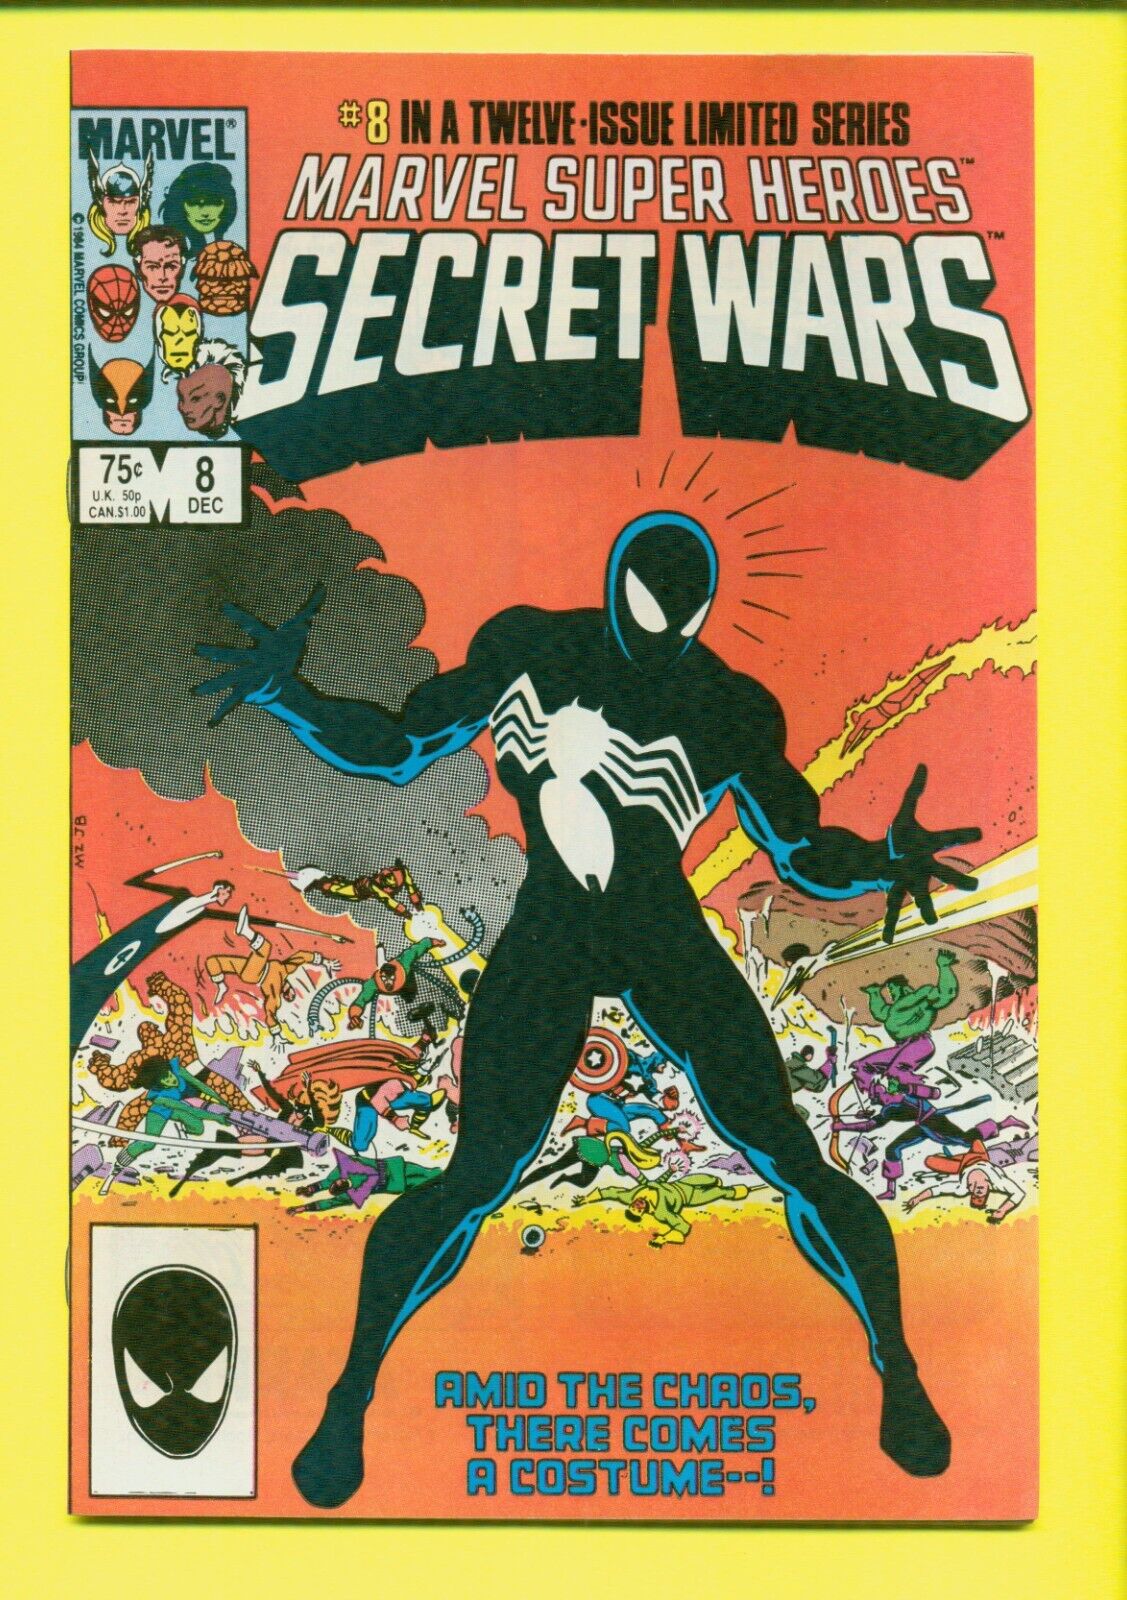 MARVEL SUPER HEROES: SECRET-WARS #1-12 FULL RUN LOT HIGH GRADE 1984 LOT-379